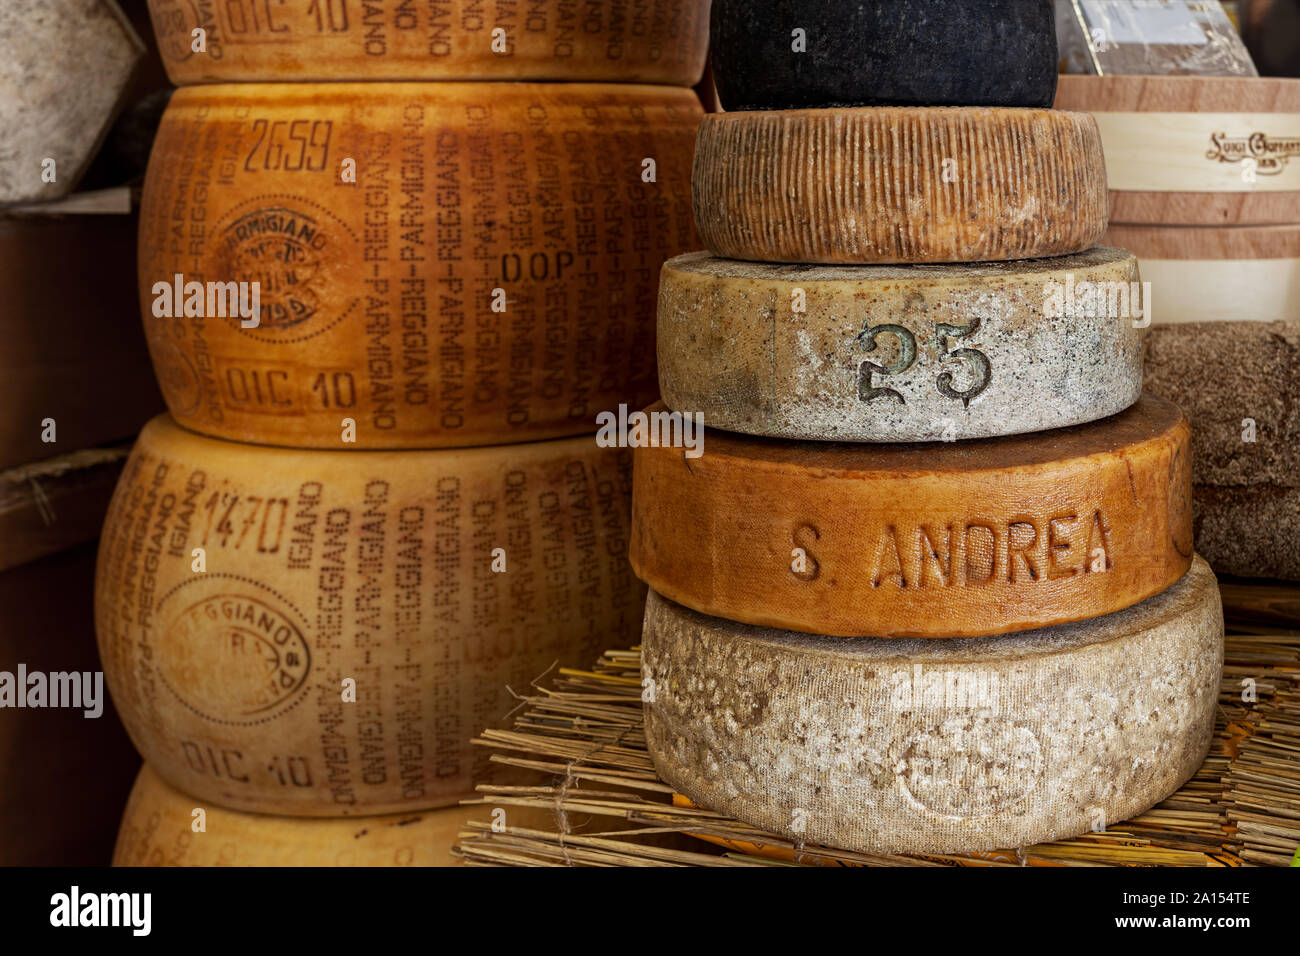 Différents types de fromage fumé artisanal et Parmesan roues sur le bloquer en cours International Festival des fromages traditionnels. Banque D'Images